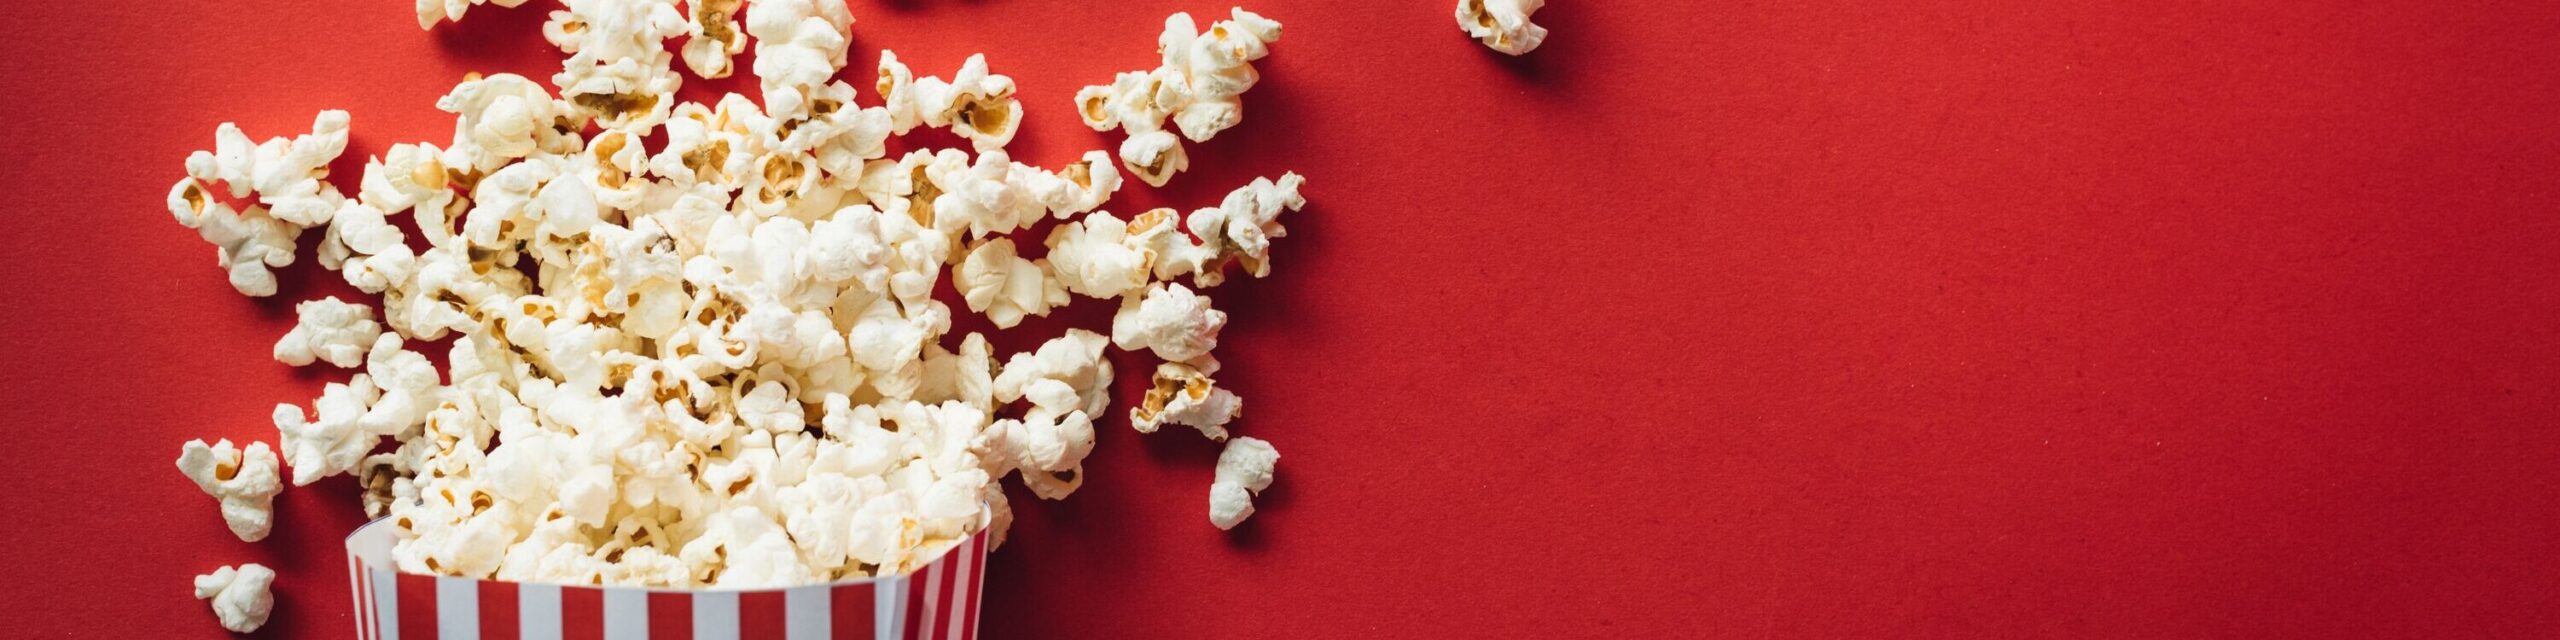 Tüte Popcorn vor rotem Hintergrund